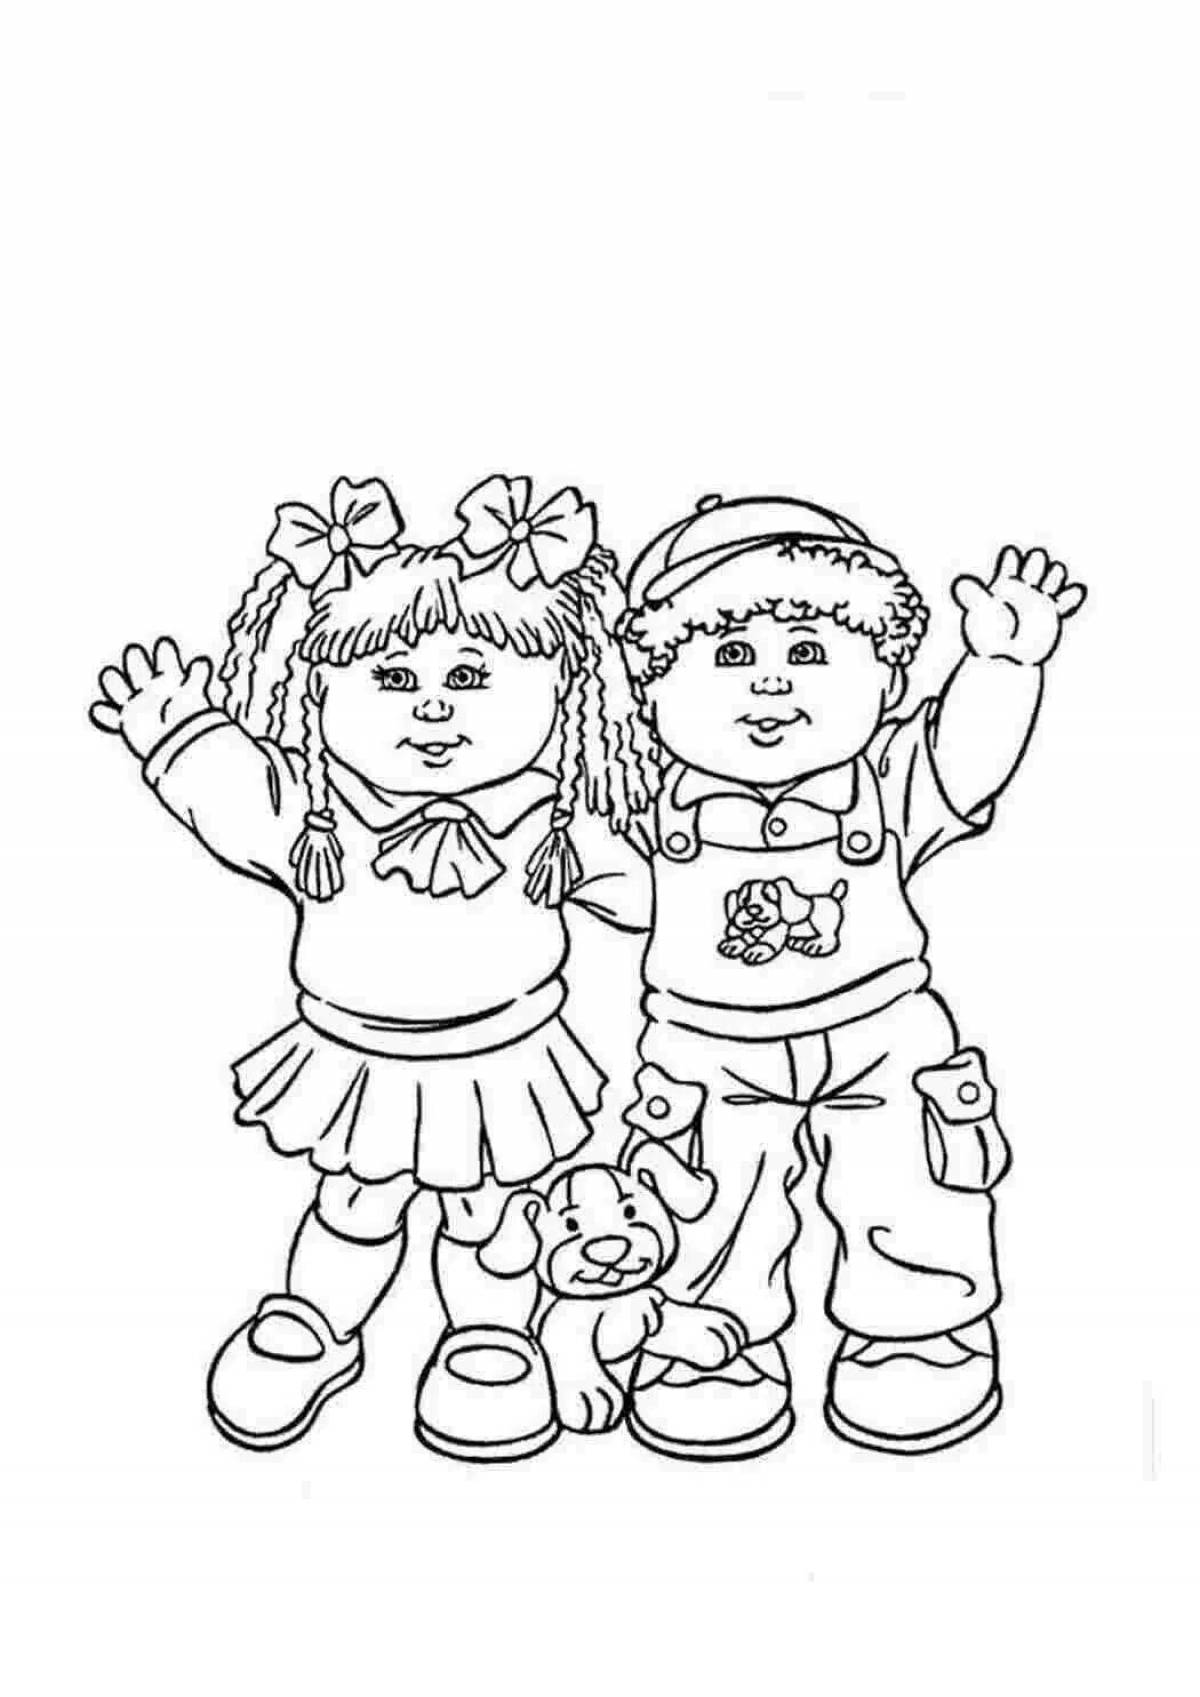 Экзотическая раскраска рисунок девочки и мальчика